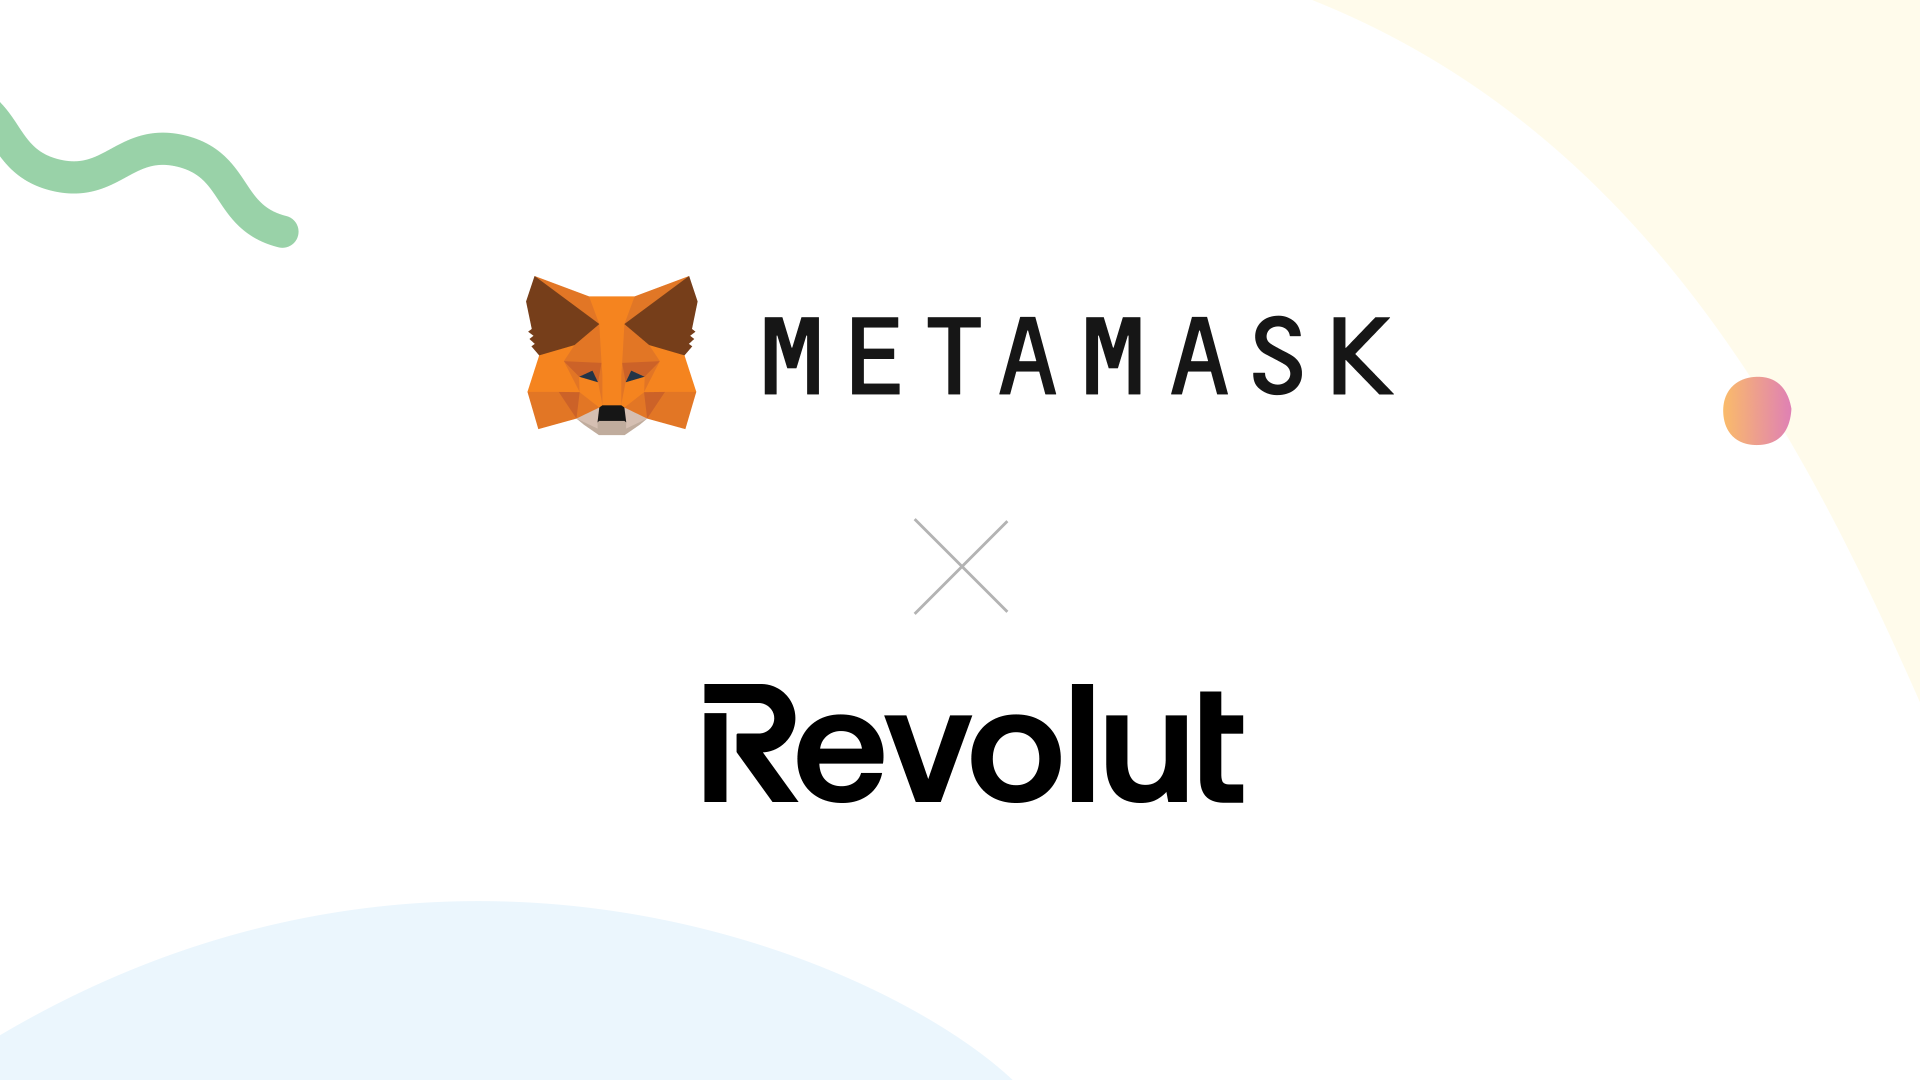 ريفولوت Revolut وميتا ماسك MetaMask يشكلان تحالفًا لإطلاق ريفولوت رامب